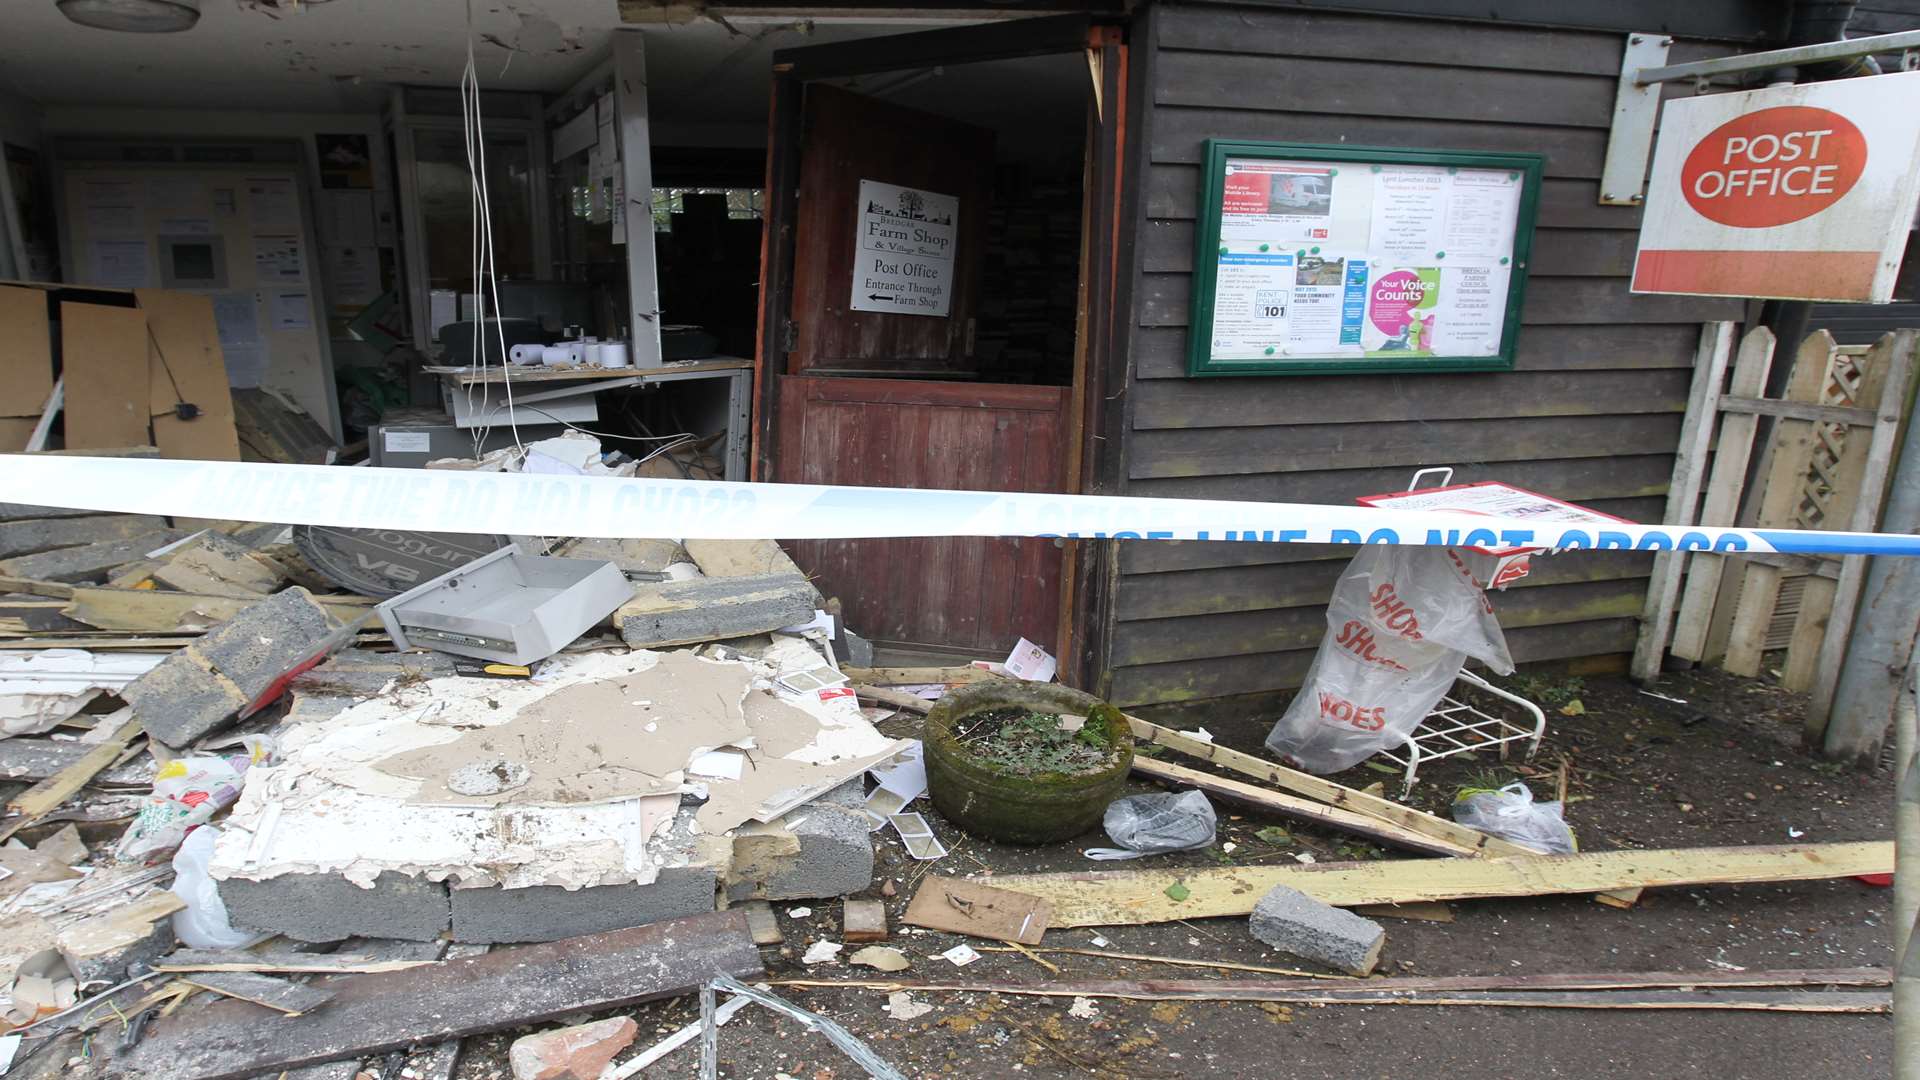 The scene of devastation at Bredgar post office